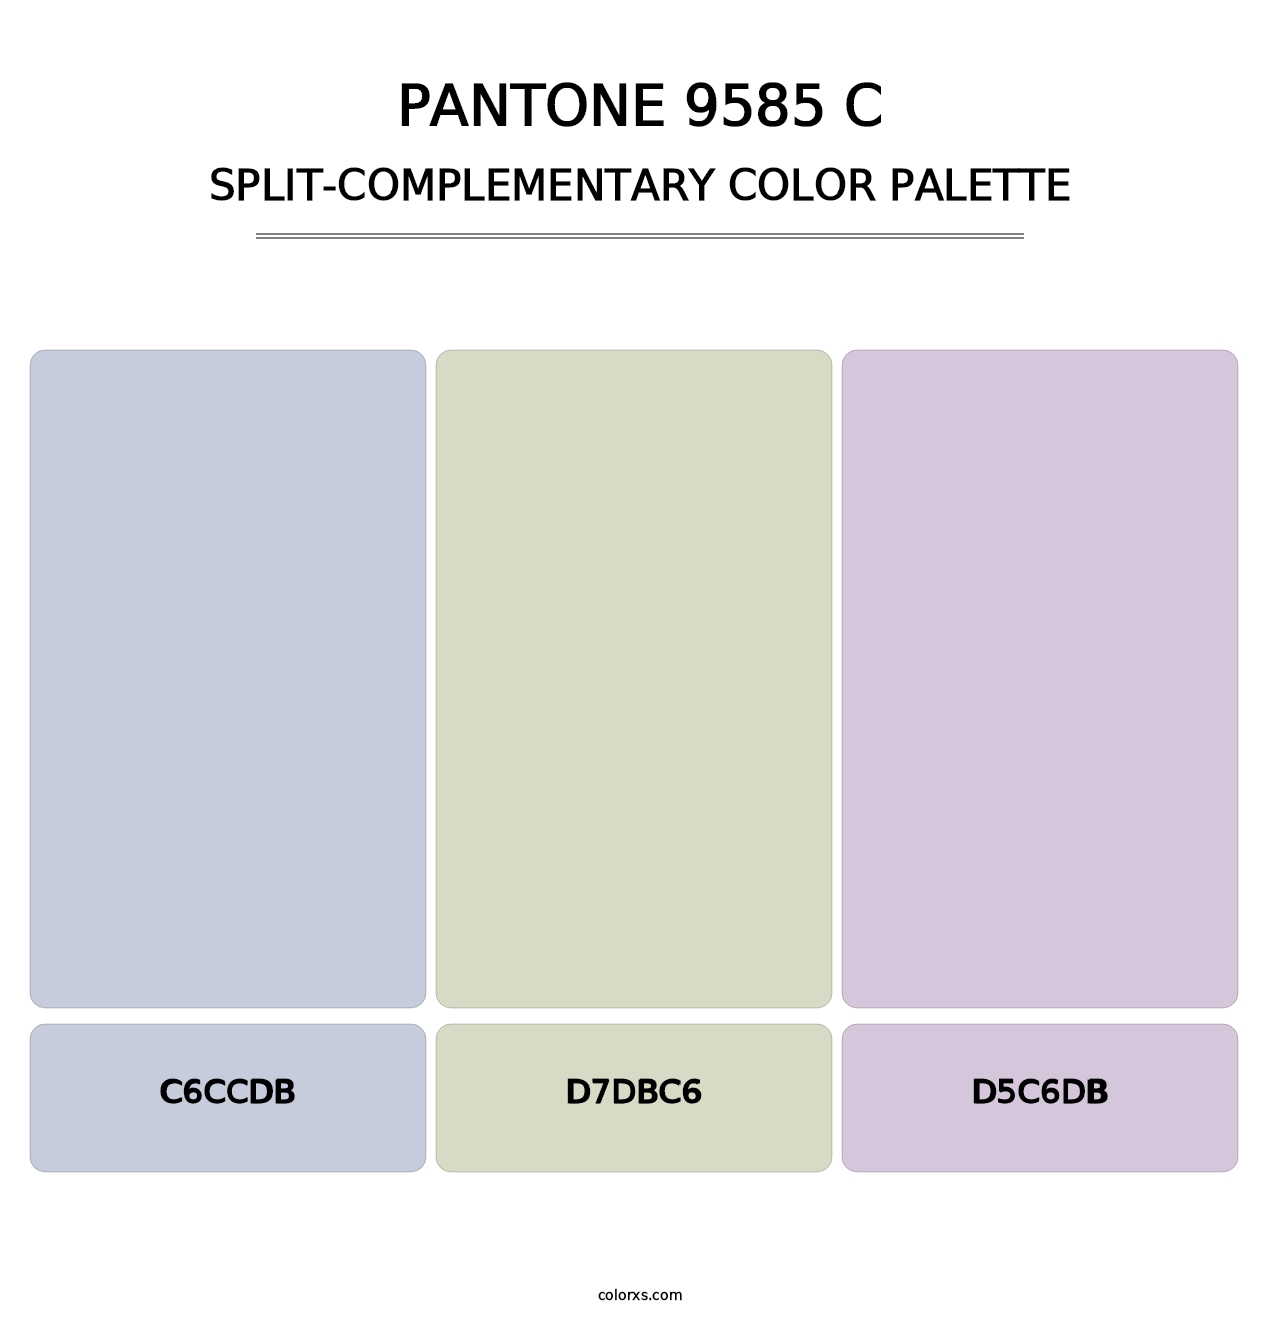 PANTONE 9585 C - Split-Complementary Color Palette